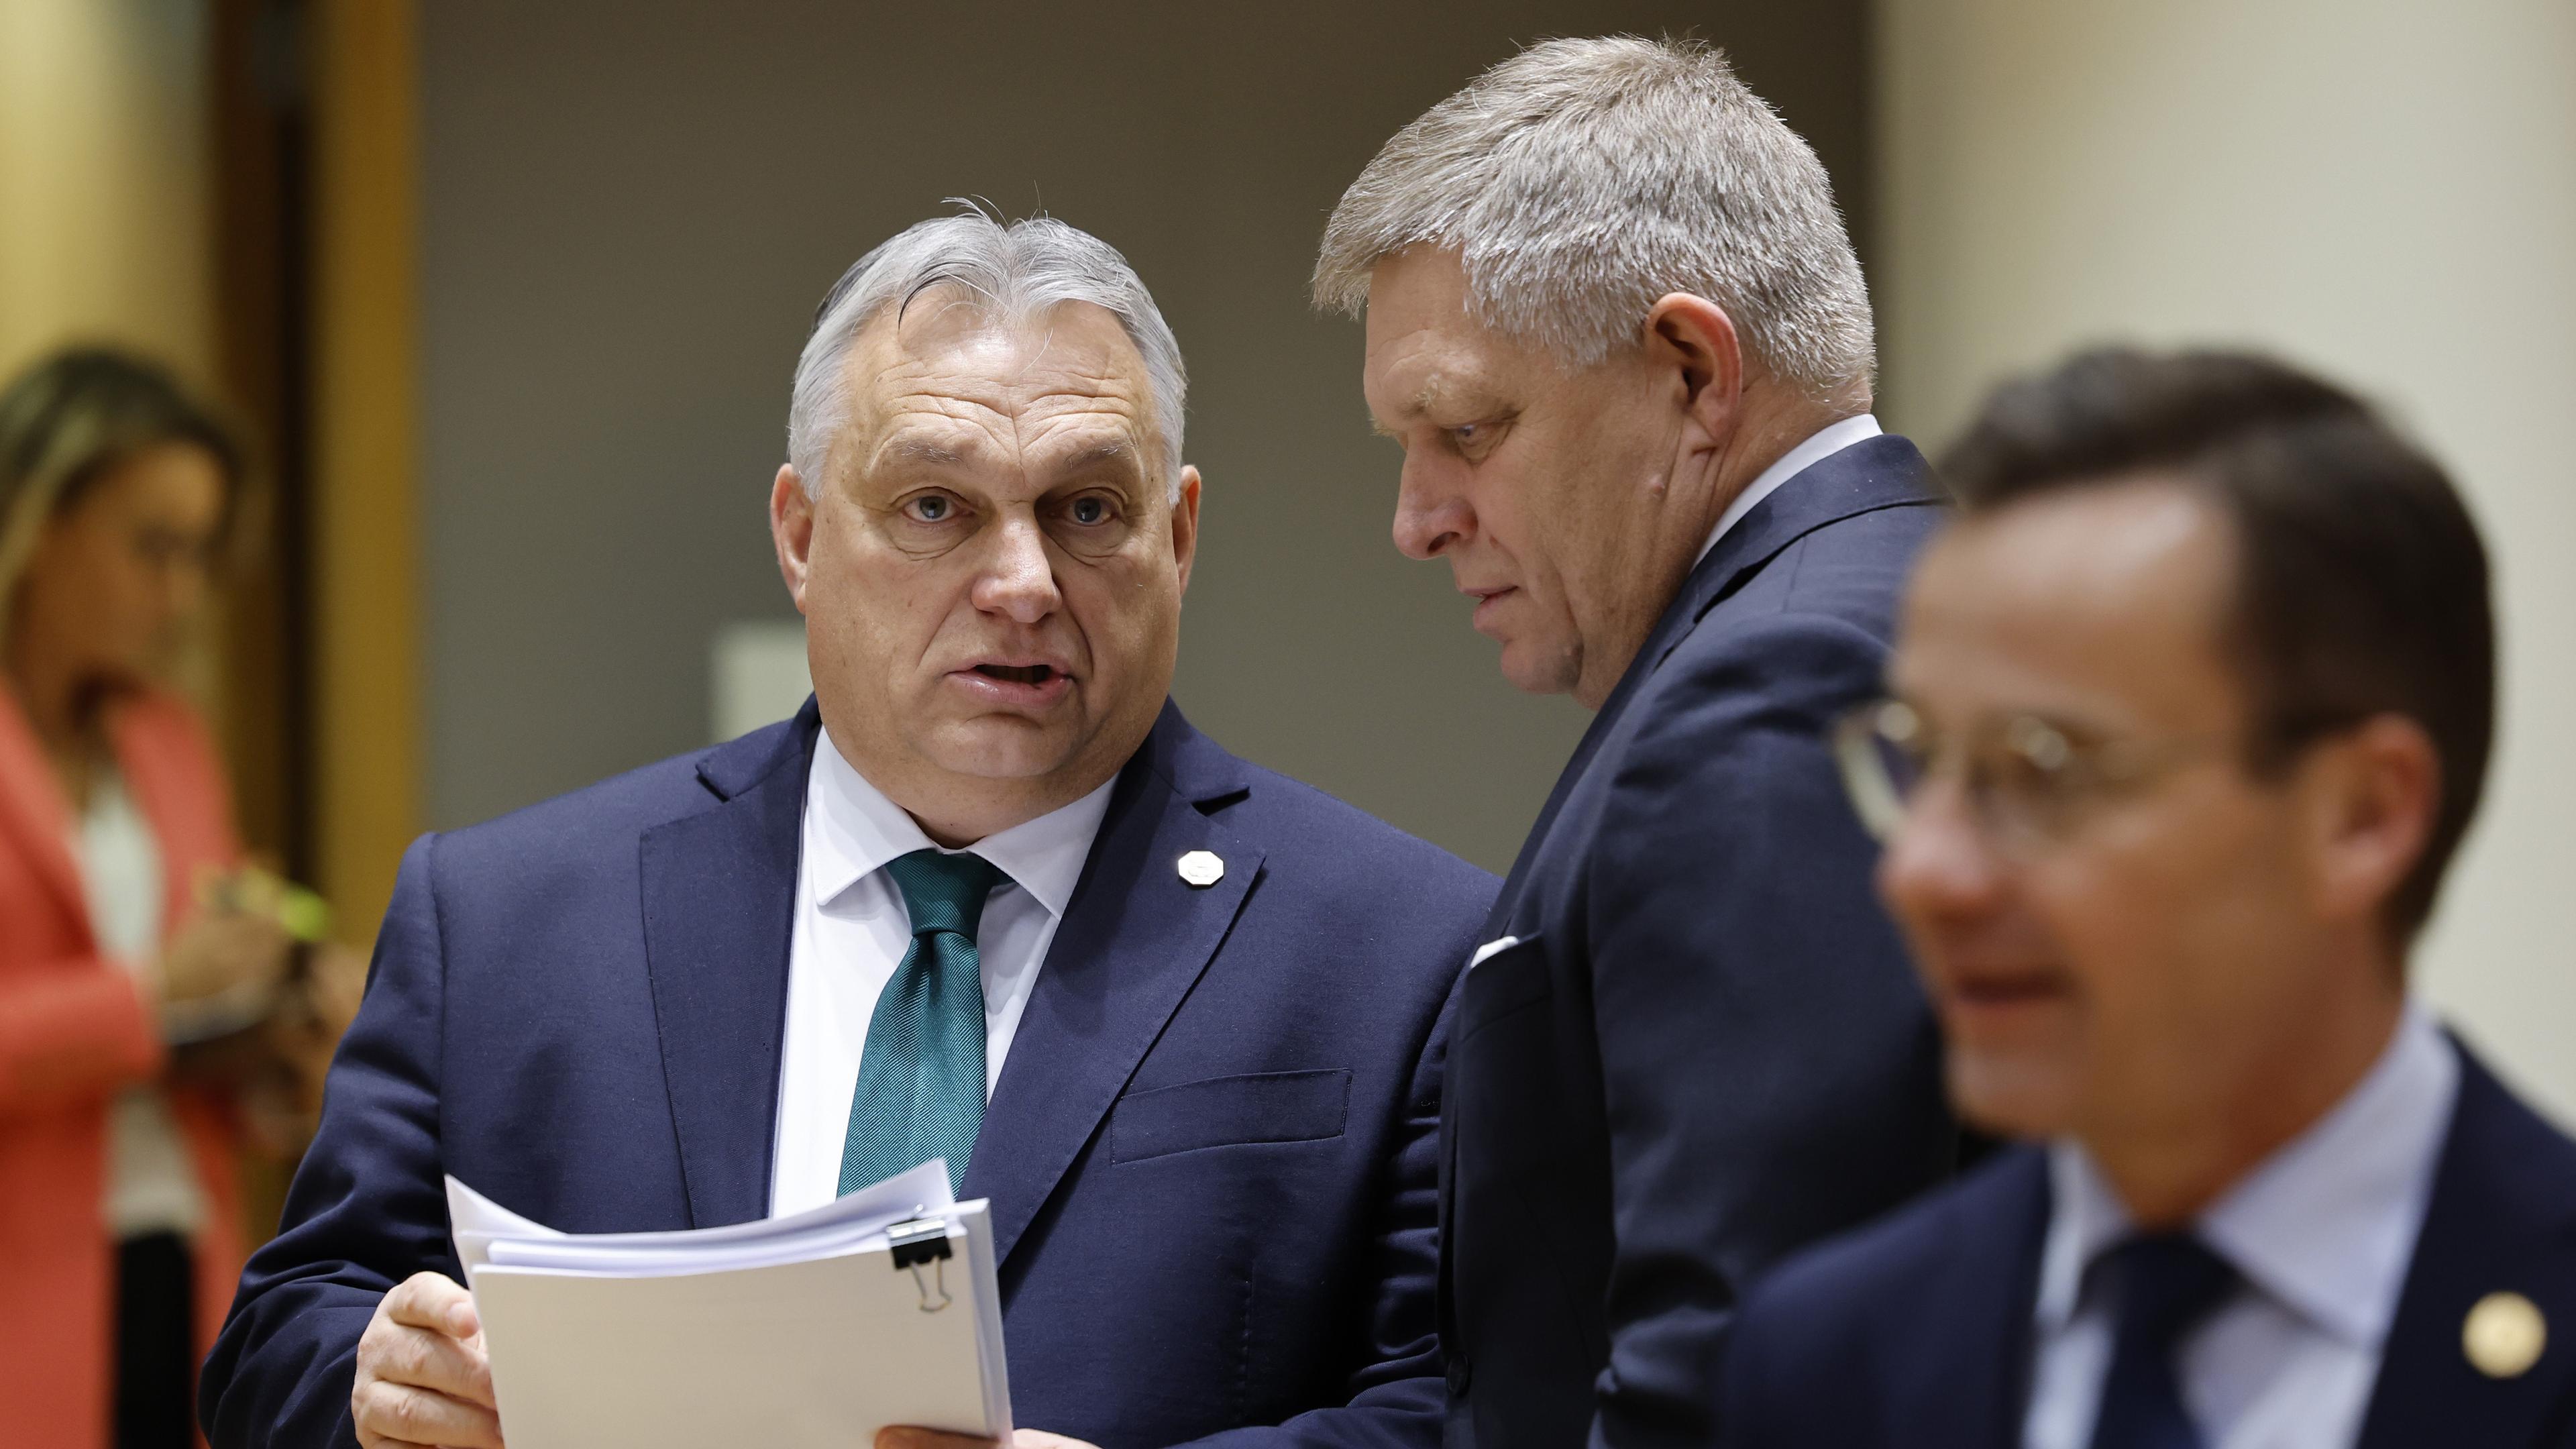 Ungerns premiärminister VIktor Orbán talar med slovakiske kollegan Robert Fico på EU:s toppmöte i Bryssel, med statsminister Ulf Kristersson i förgrunden. Foto: Geert Vanden Wijngaert/AP/TT